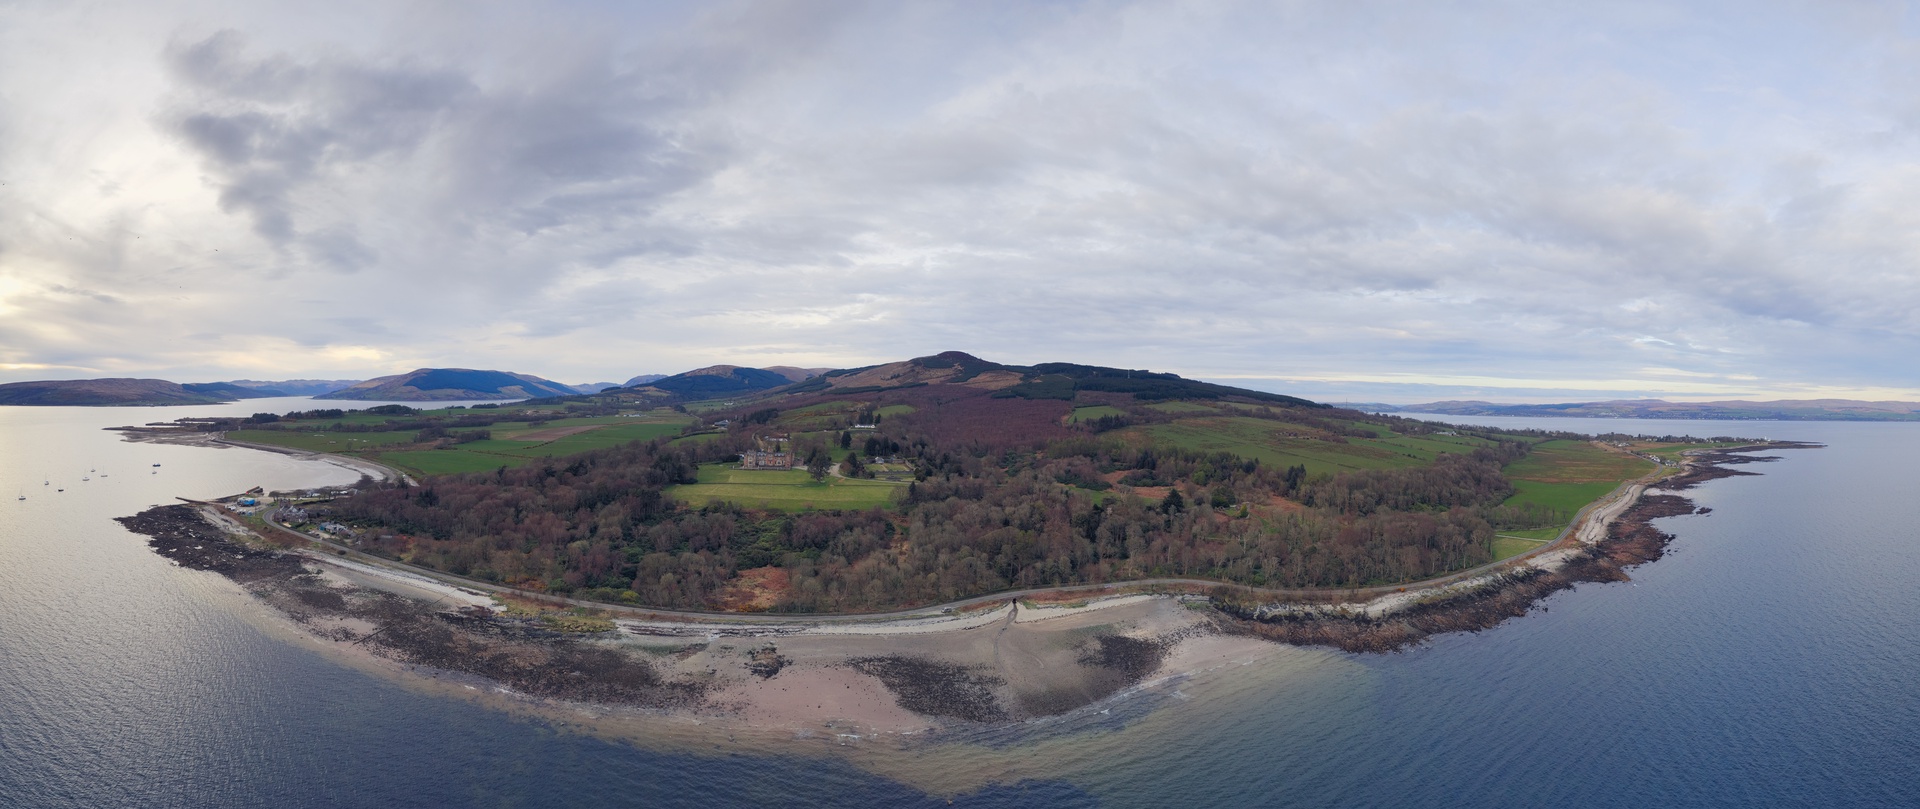 Highland Boundary fault, Castle Toward, Cowal, Argyll